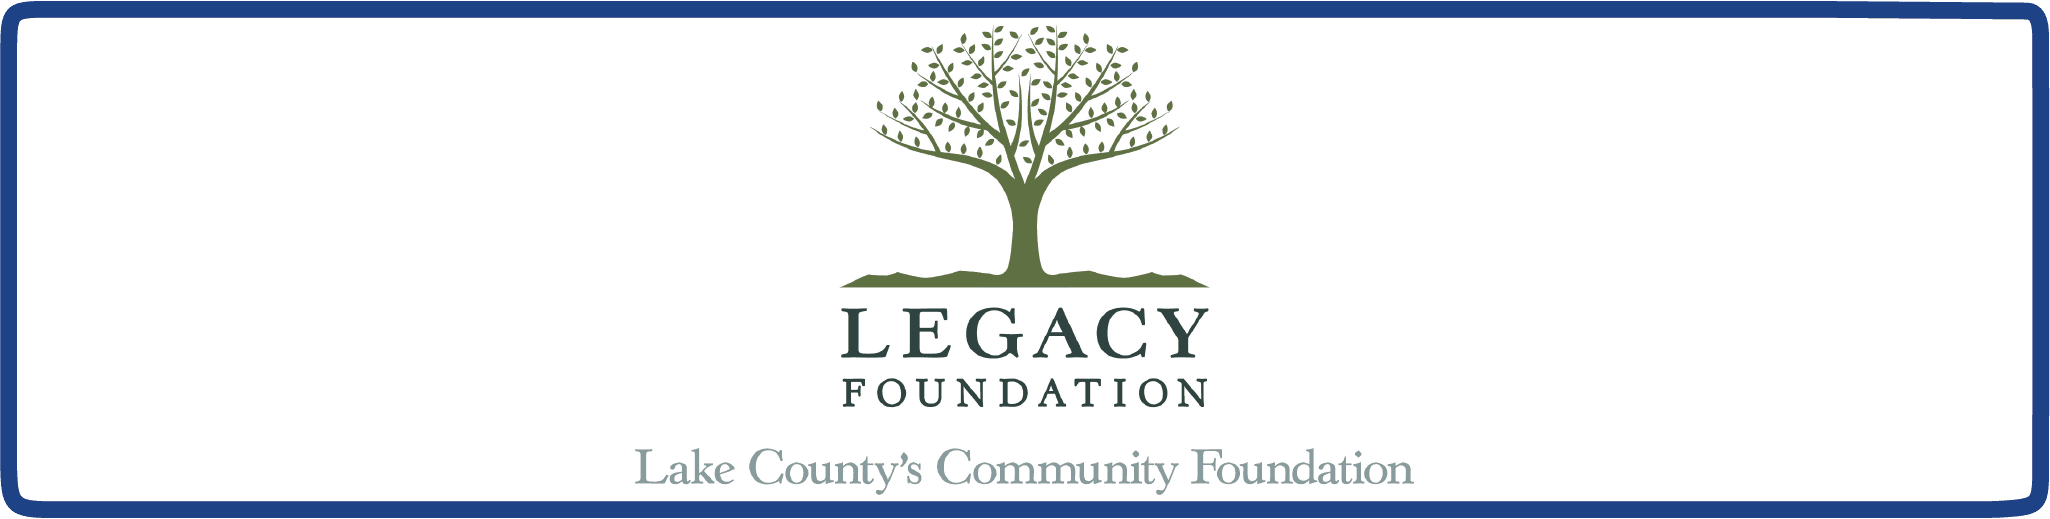 Legacy Foundation